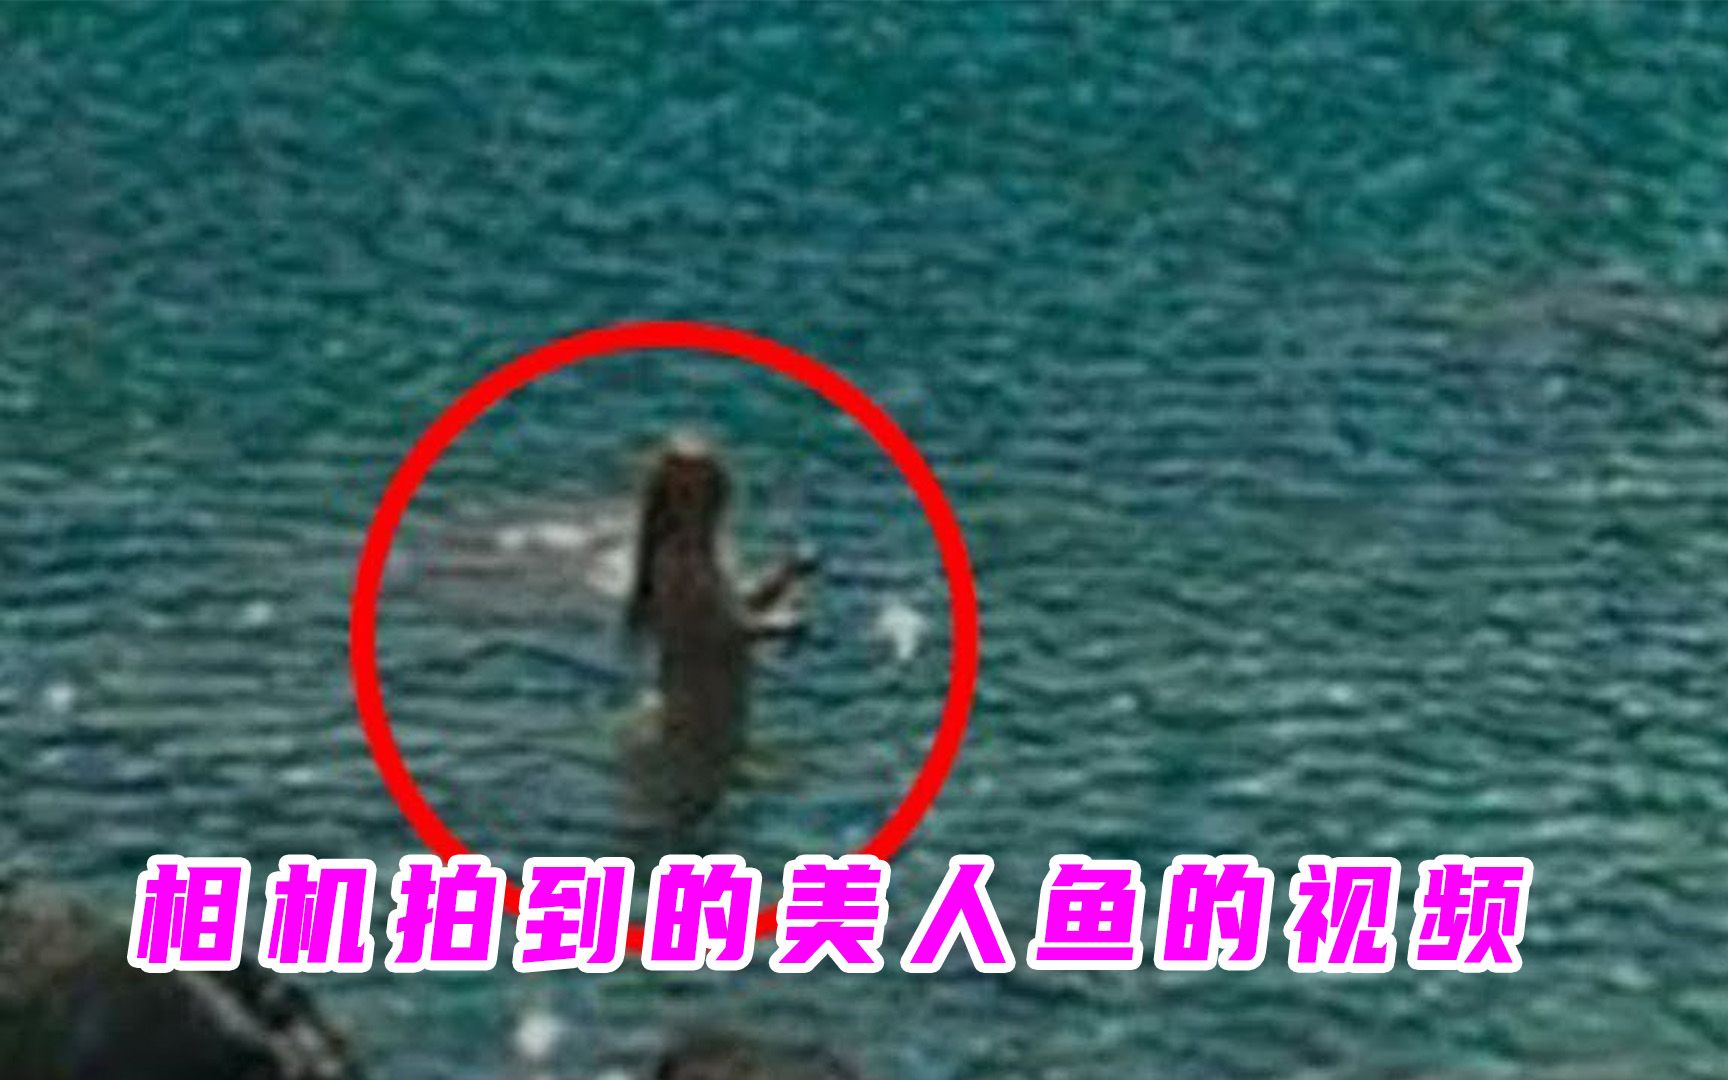 相机拍到的美人鱼视频，来看一下是真的还是假的？